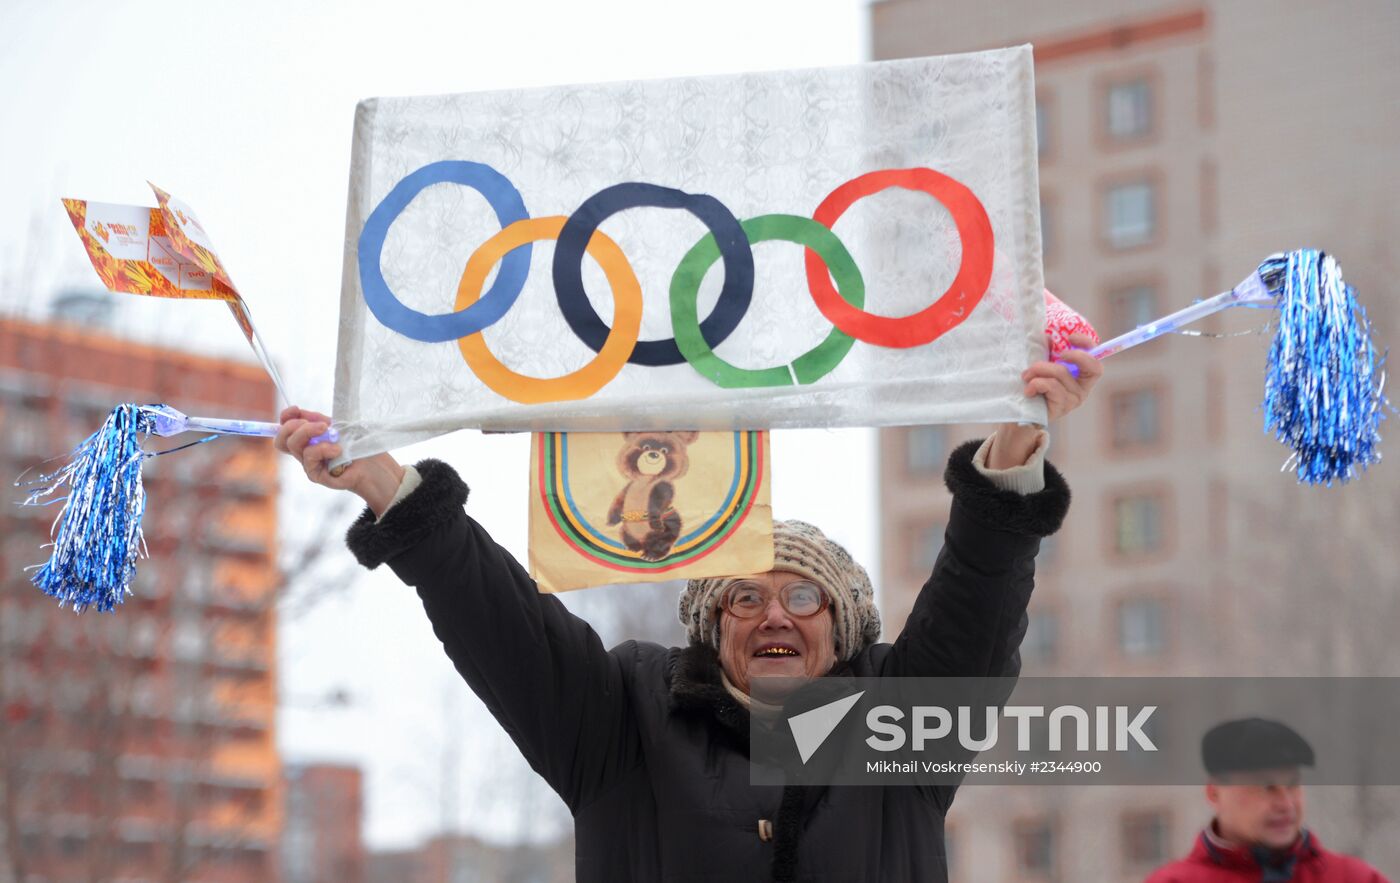 Olympic torch relay. Izhevsk